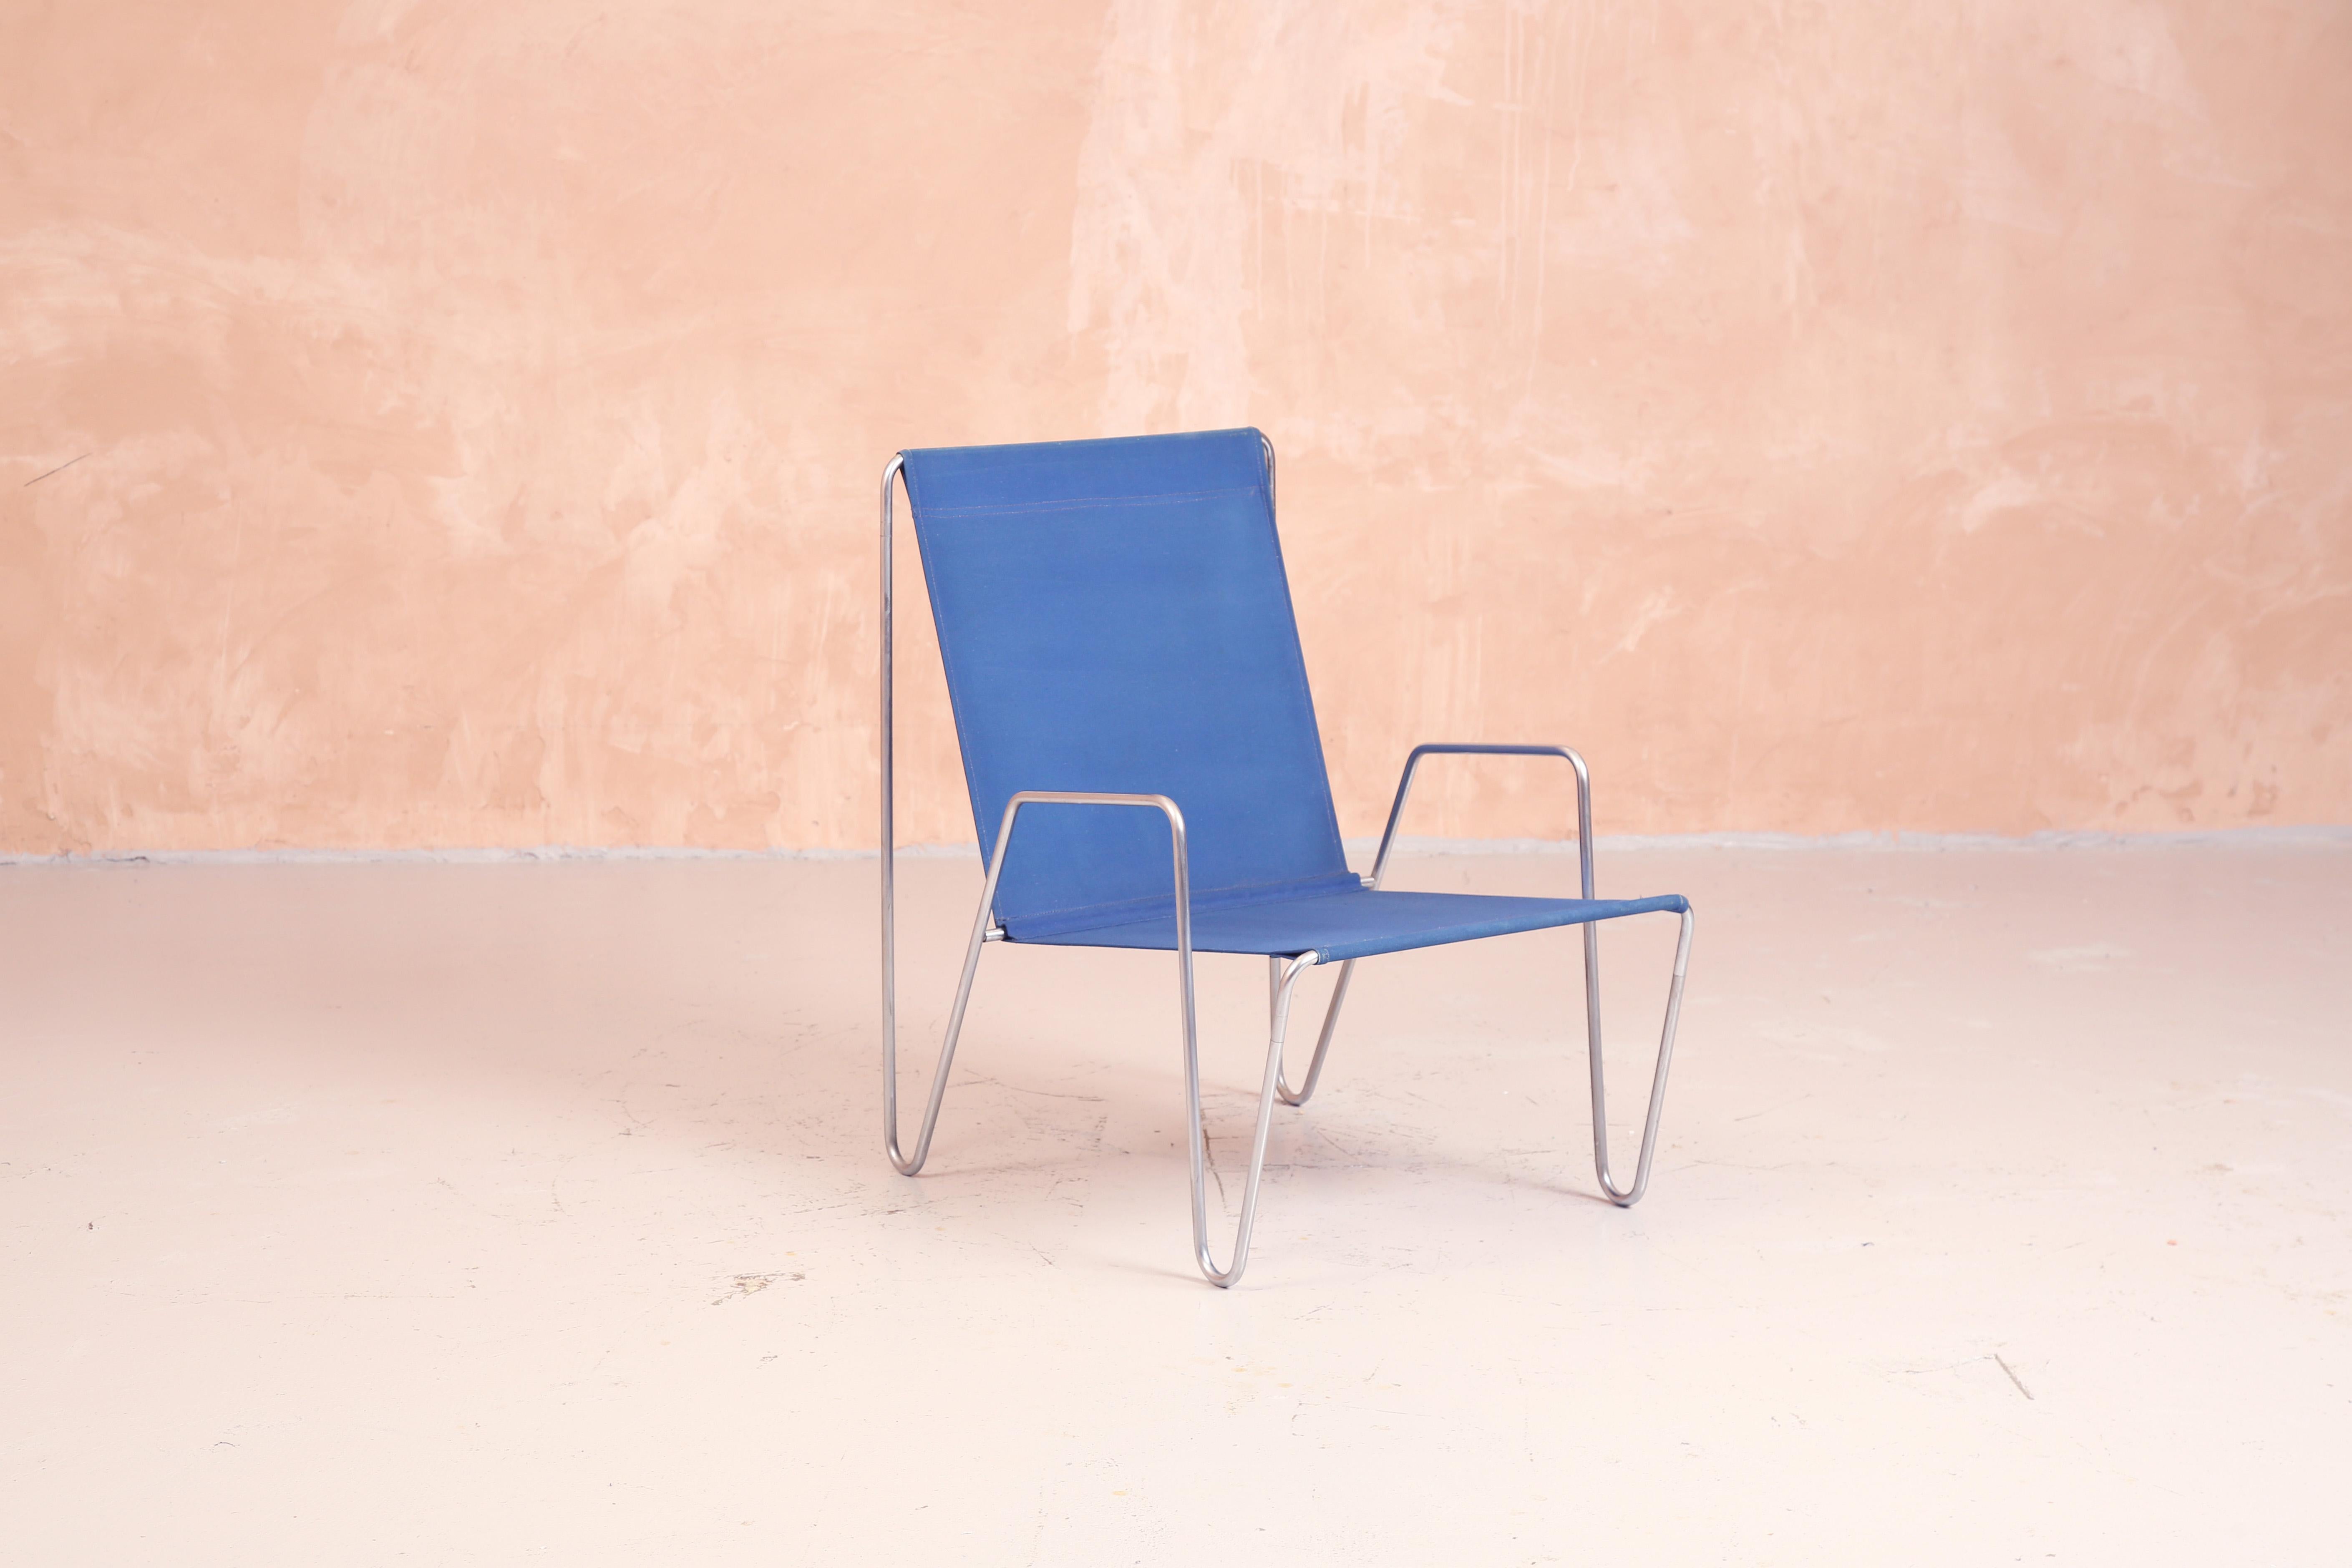 Verner Panton Bachelor Chair mit Armlehnen
Modell 3351
Blaues Segeltuch und verchromtes Stahlrohr
Entworfen 1953, Produziert 1955

Das Design dieses Stuhls basiert auf dem 1927 von Gerrit Rietveld entworfenen Konsolenstuhl. Es handelt sich um